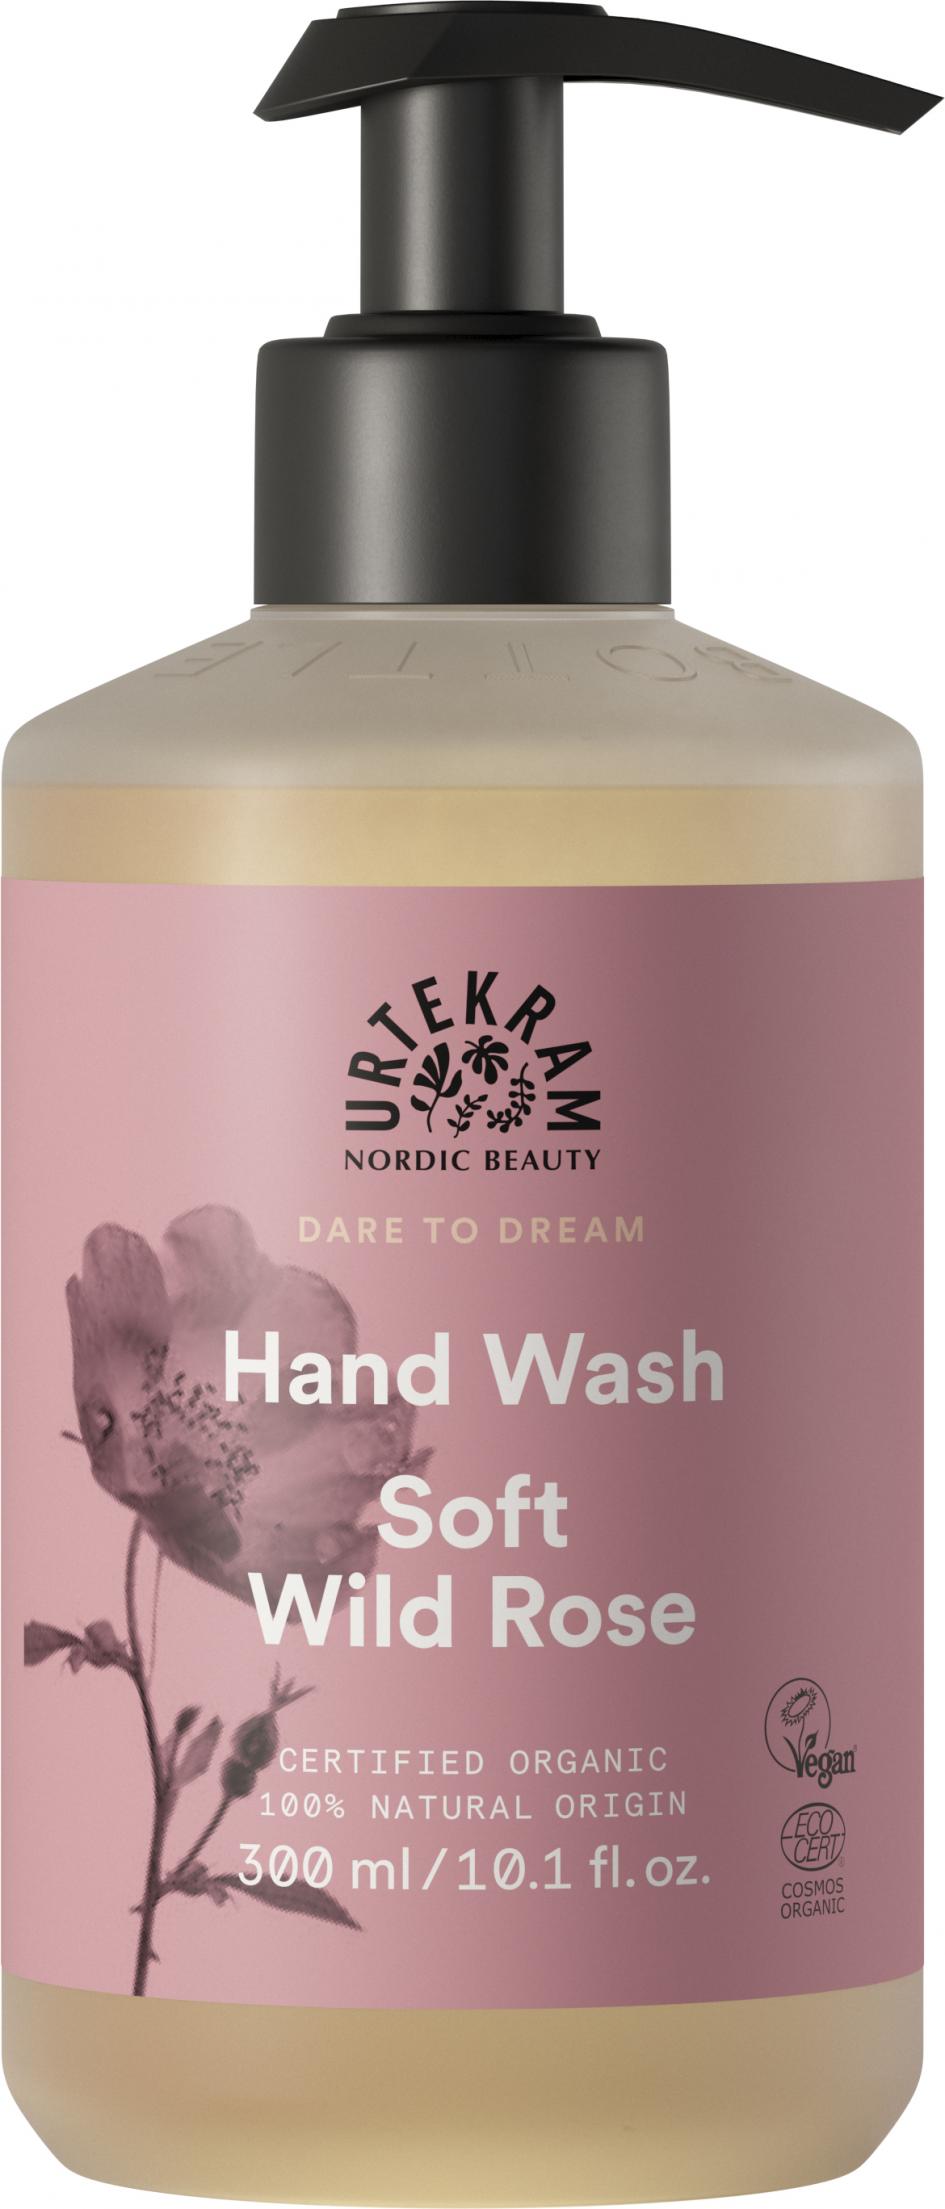 Hand Wash Soft Wild Rose 300ml